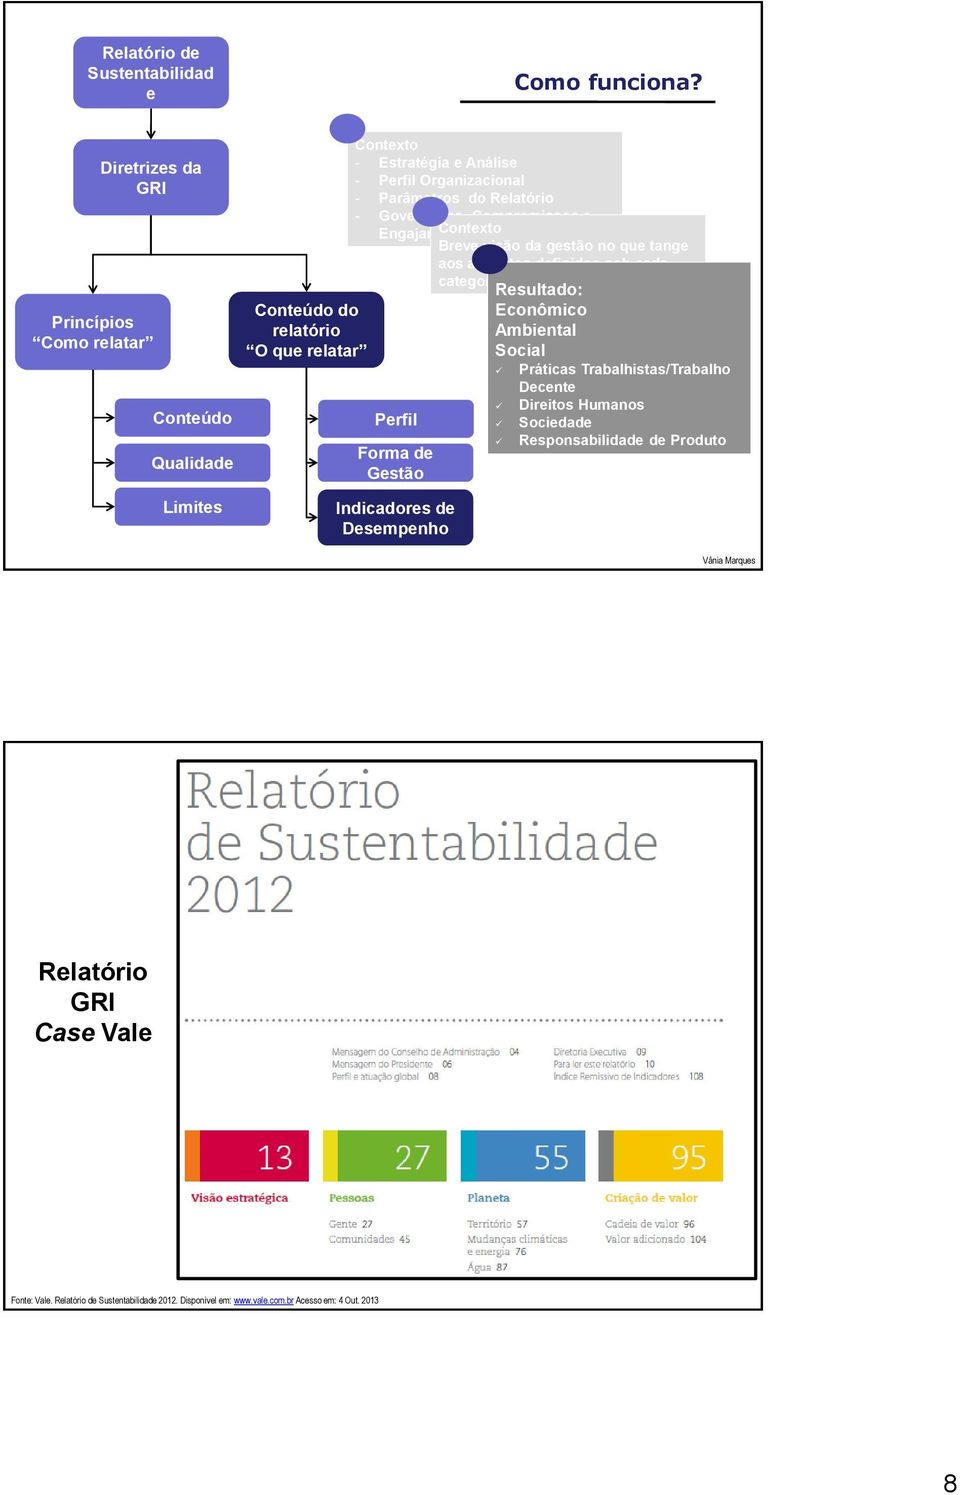 Relatório - Governança, Compromissos e Contexto Engajamento Perfil Forma de Gestão Breve visão da gestão no que tange aos aspectos definidos sob cada categoria de